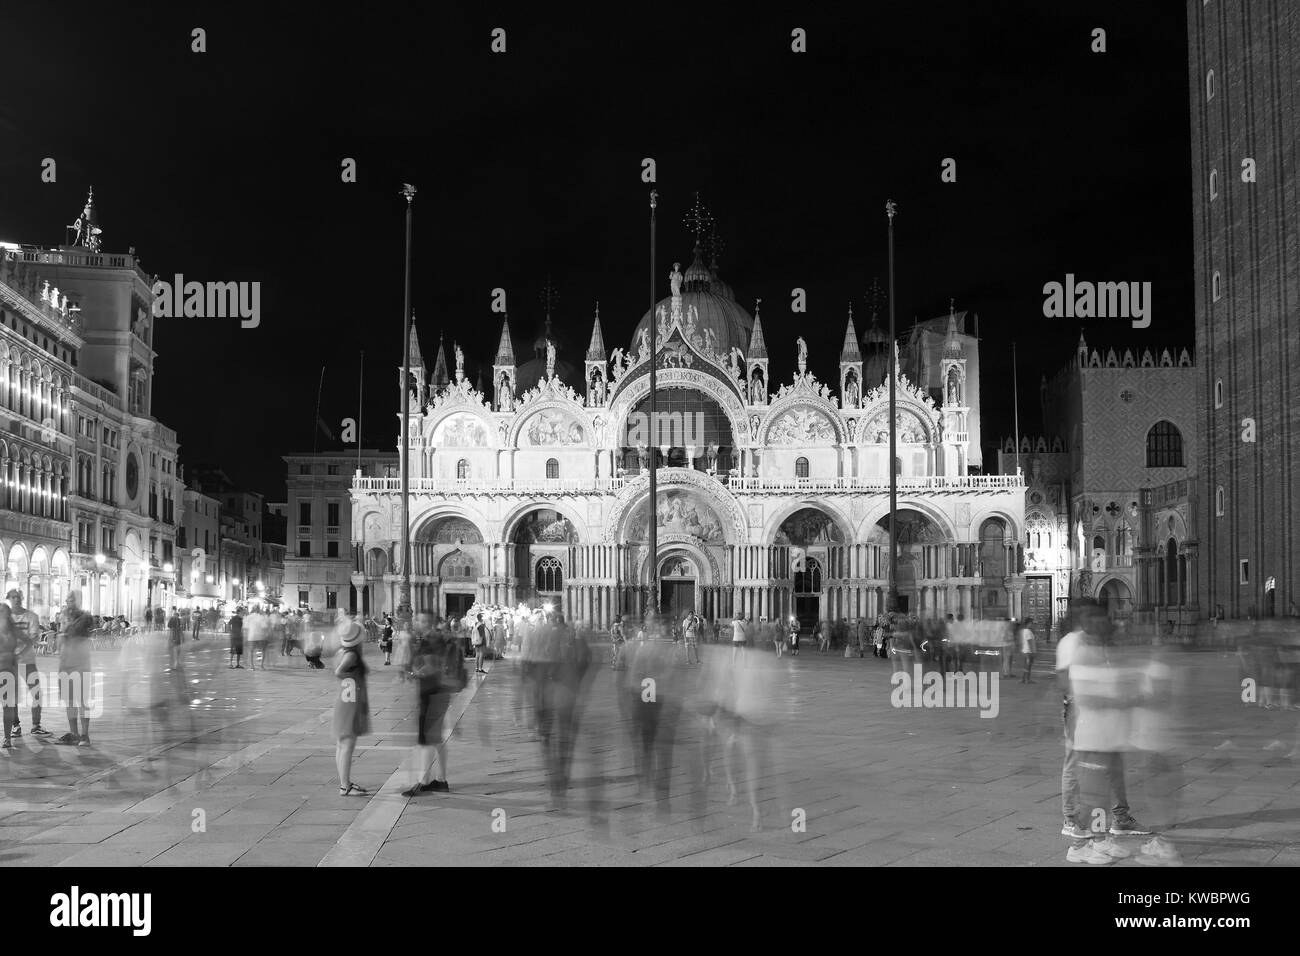 Movimento sfocate immagini di persone a piedi di piazza San Marco (Piazza San Marco) durante la notte con il famoso punto di riferimento basilica in background. Foto Stock